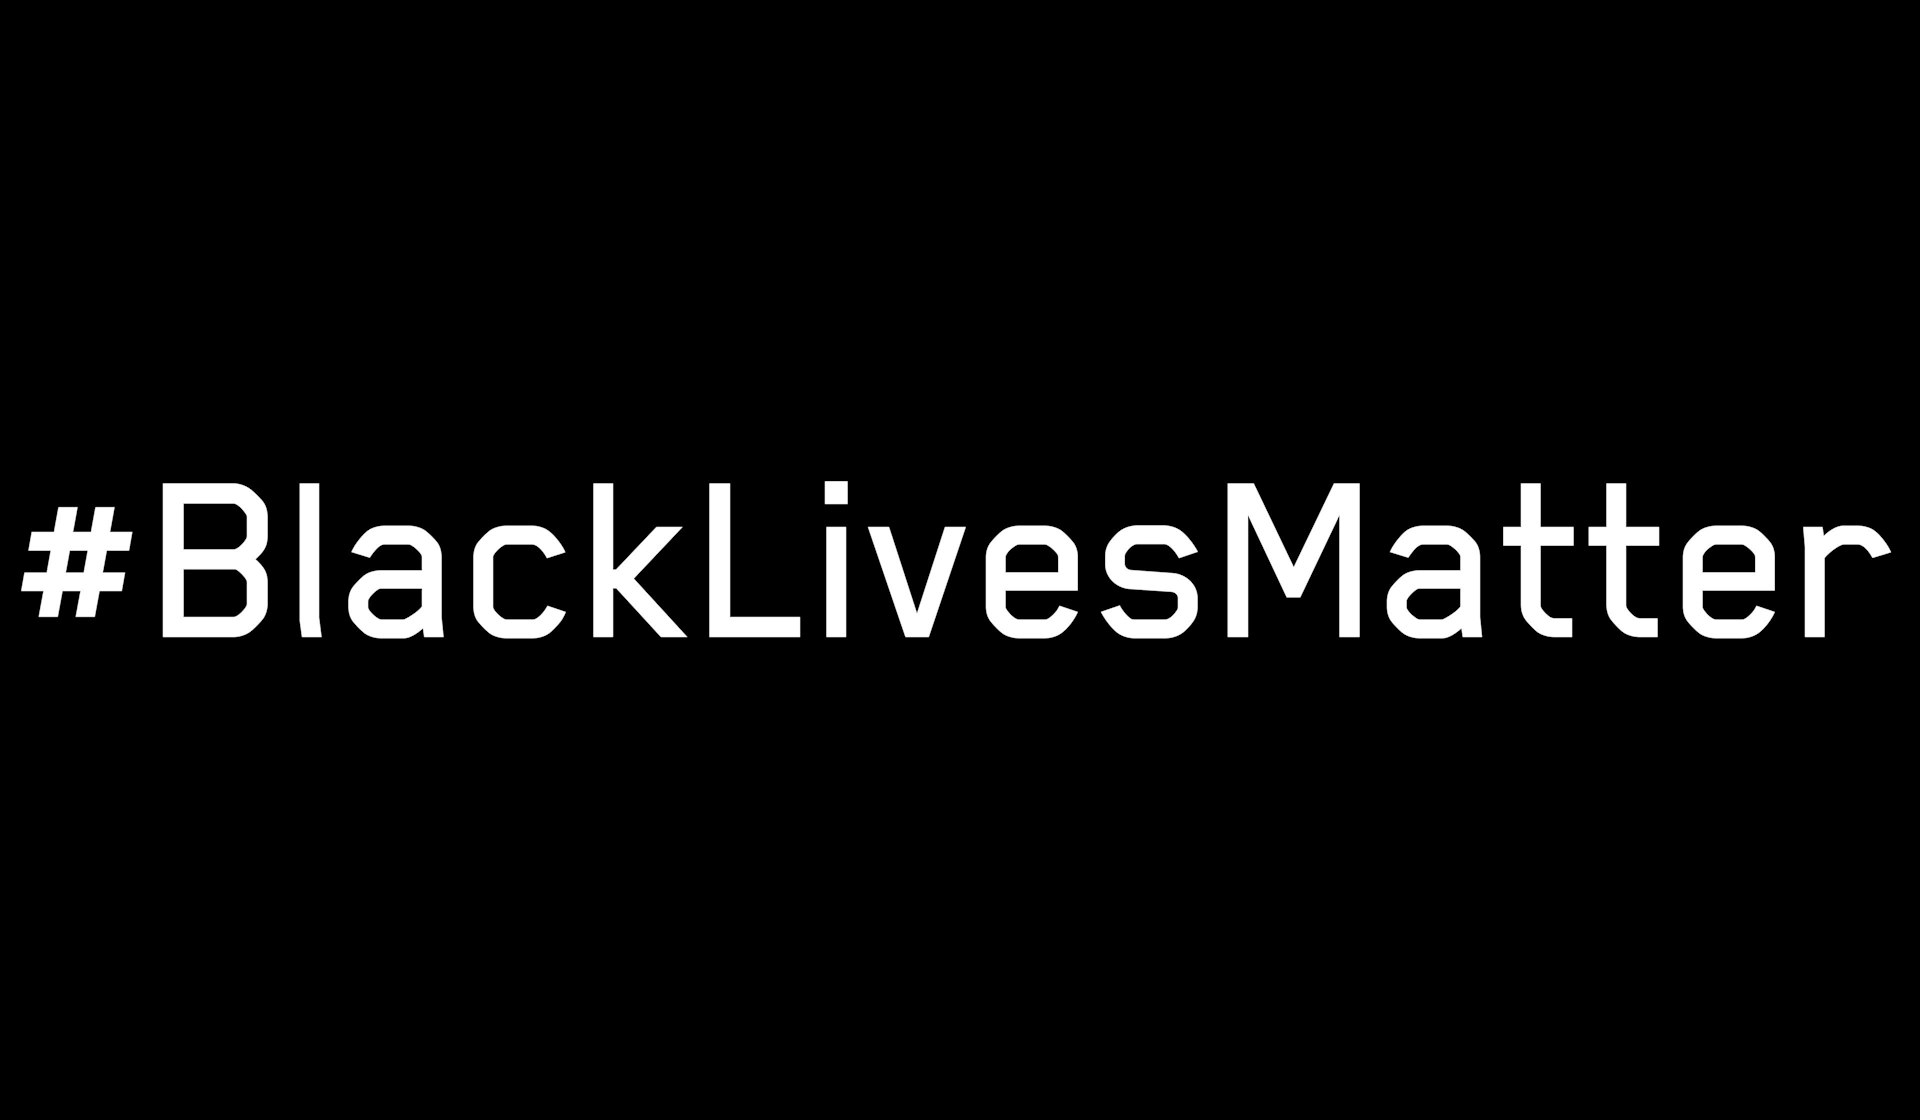 #BlackLivesMatter is our collective battle